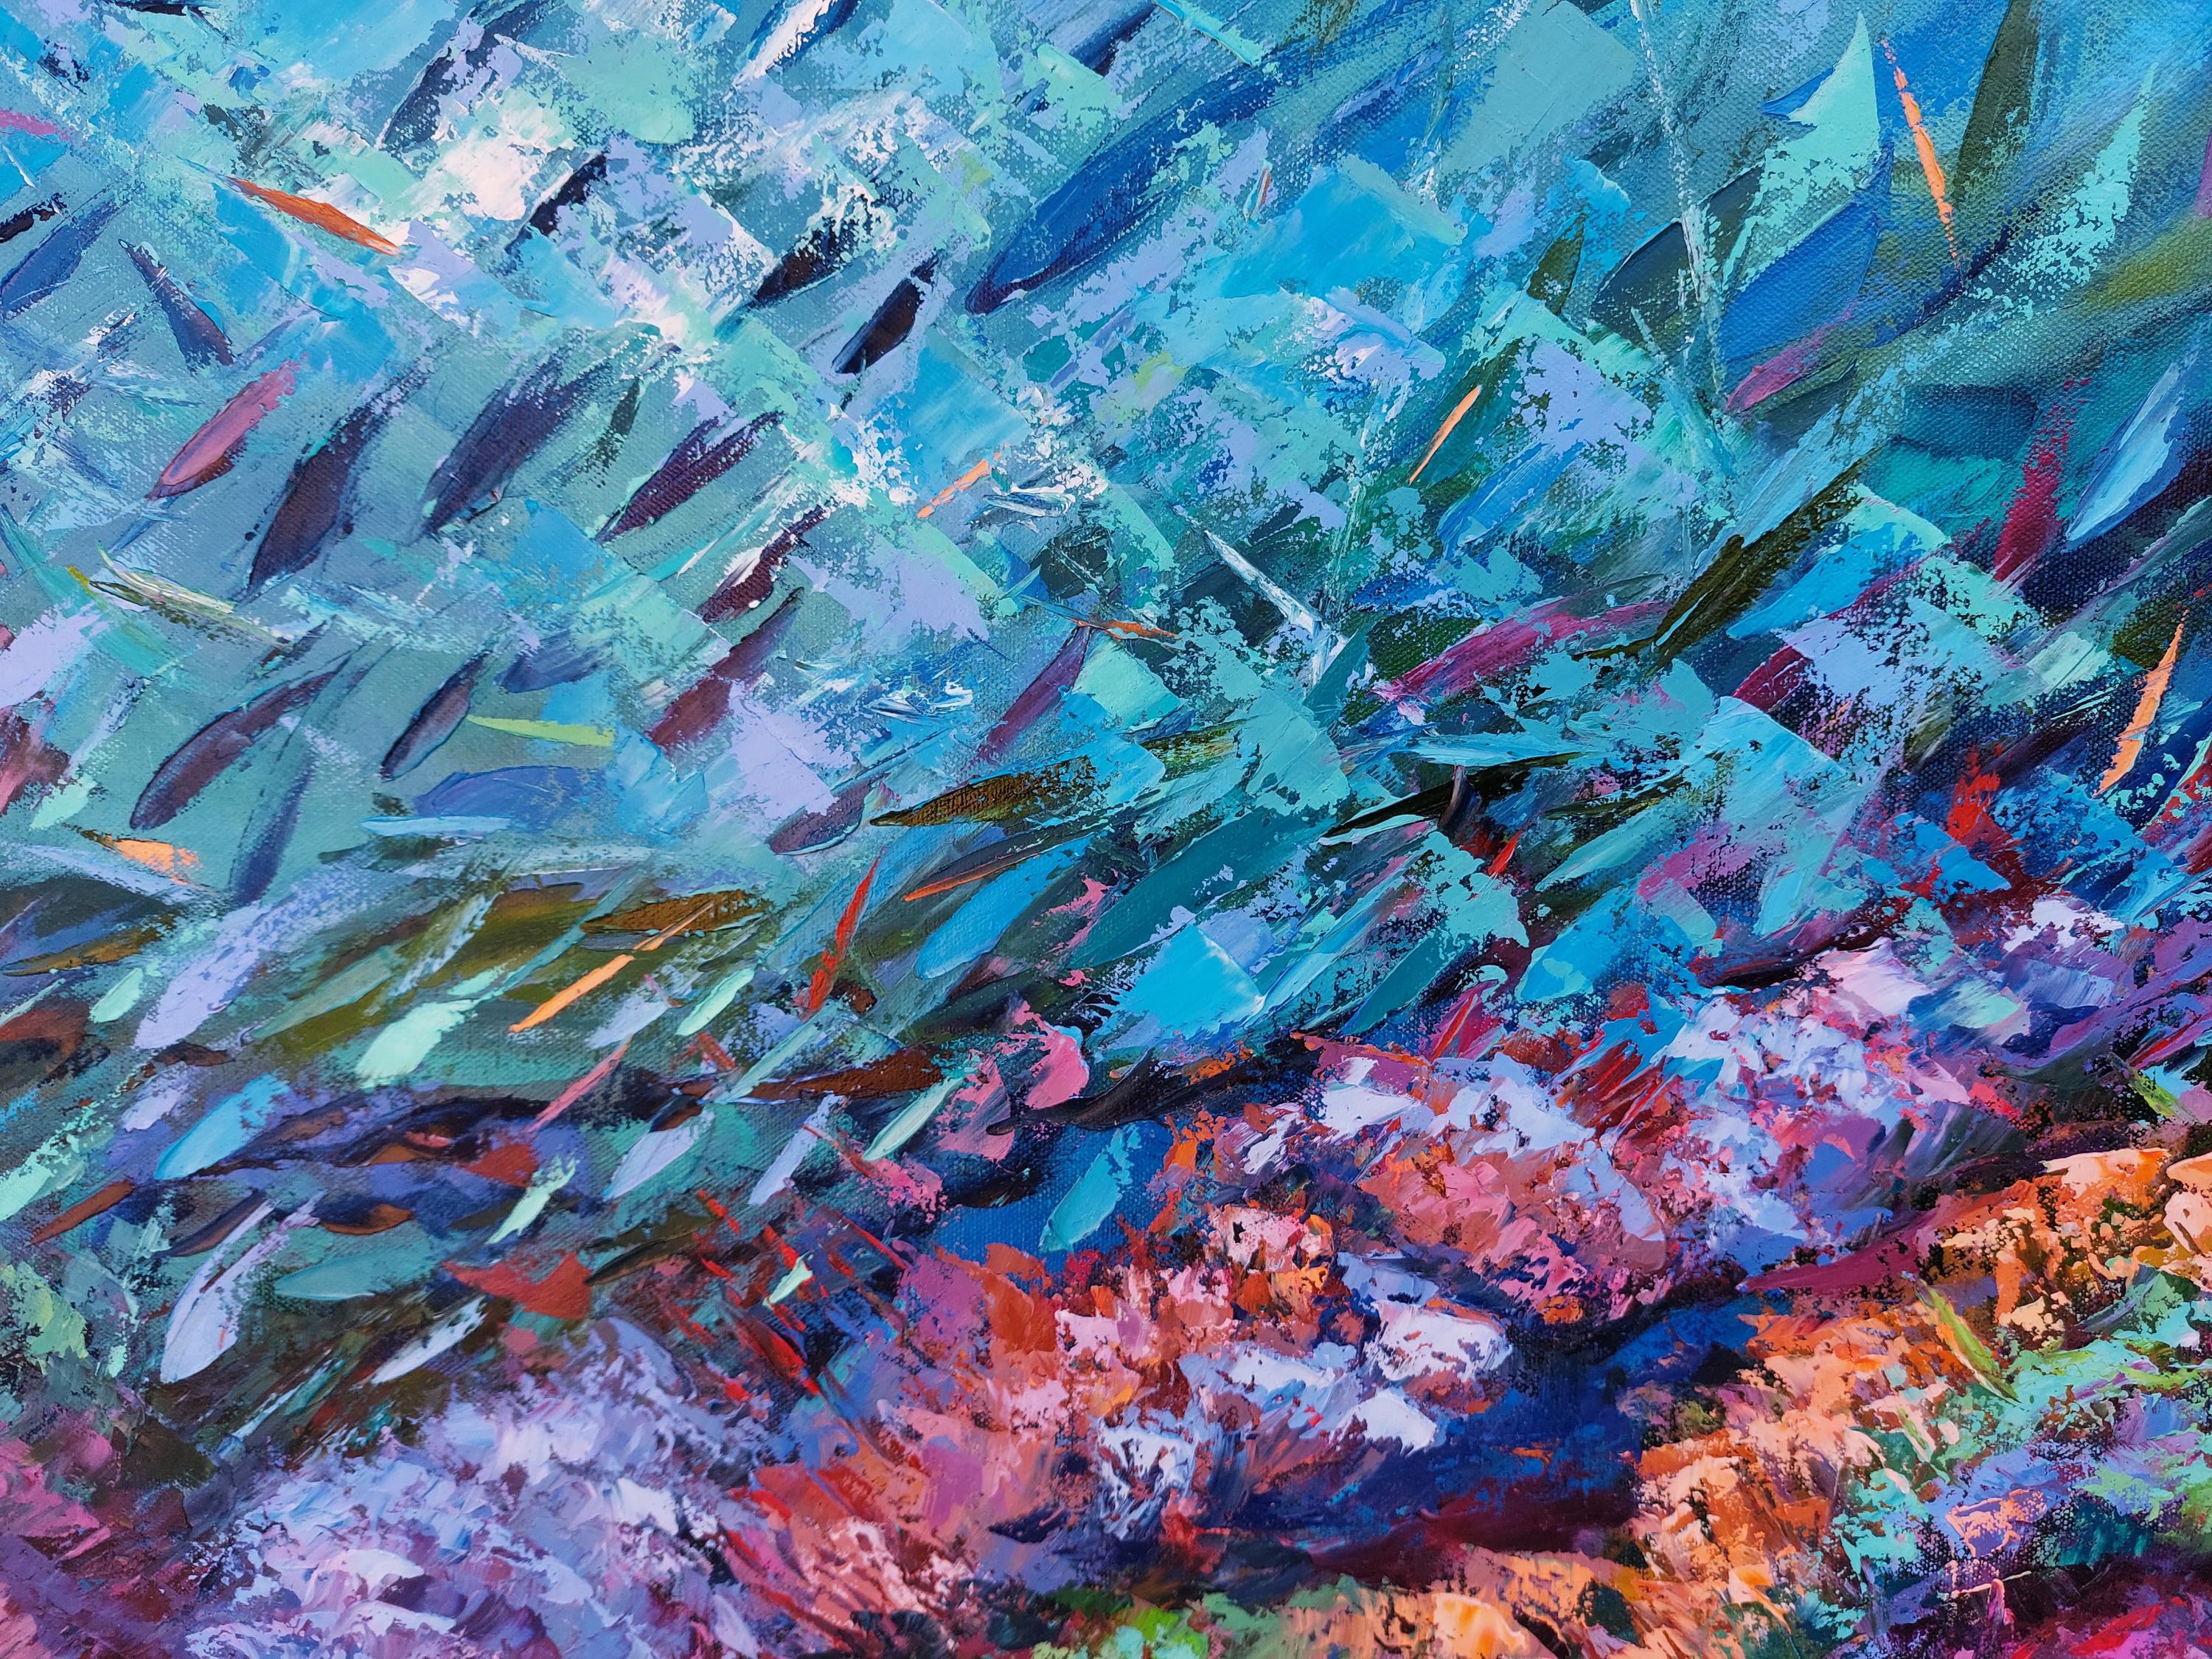 Coral Reef Painting Ocean Art Underwater Seascape Original Painting For Sale 10